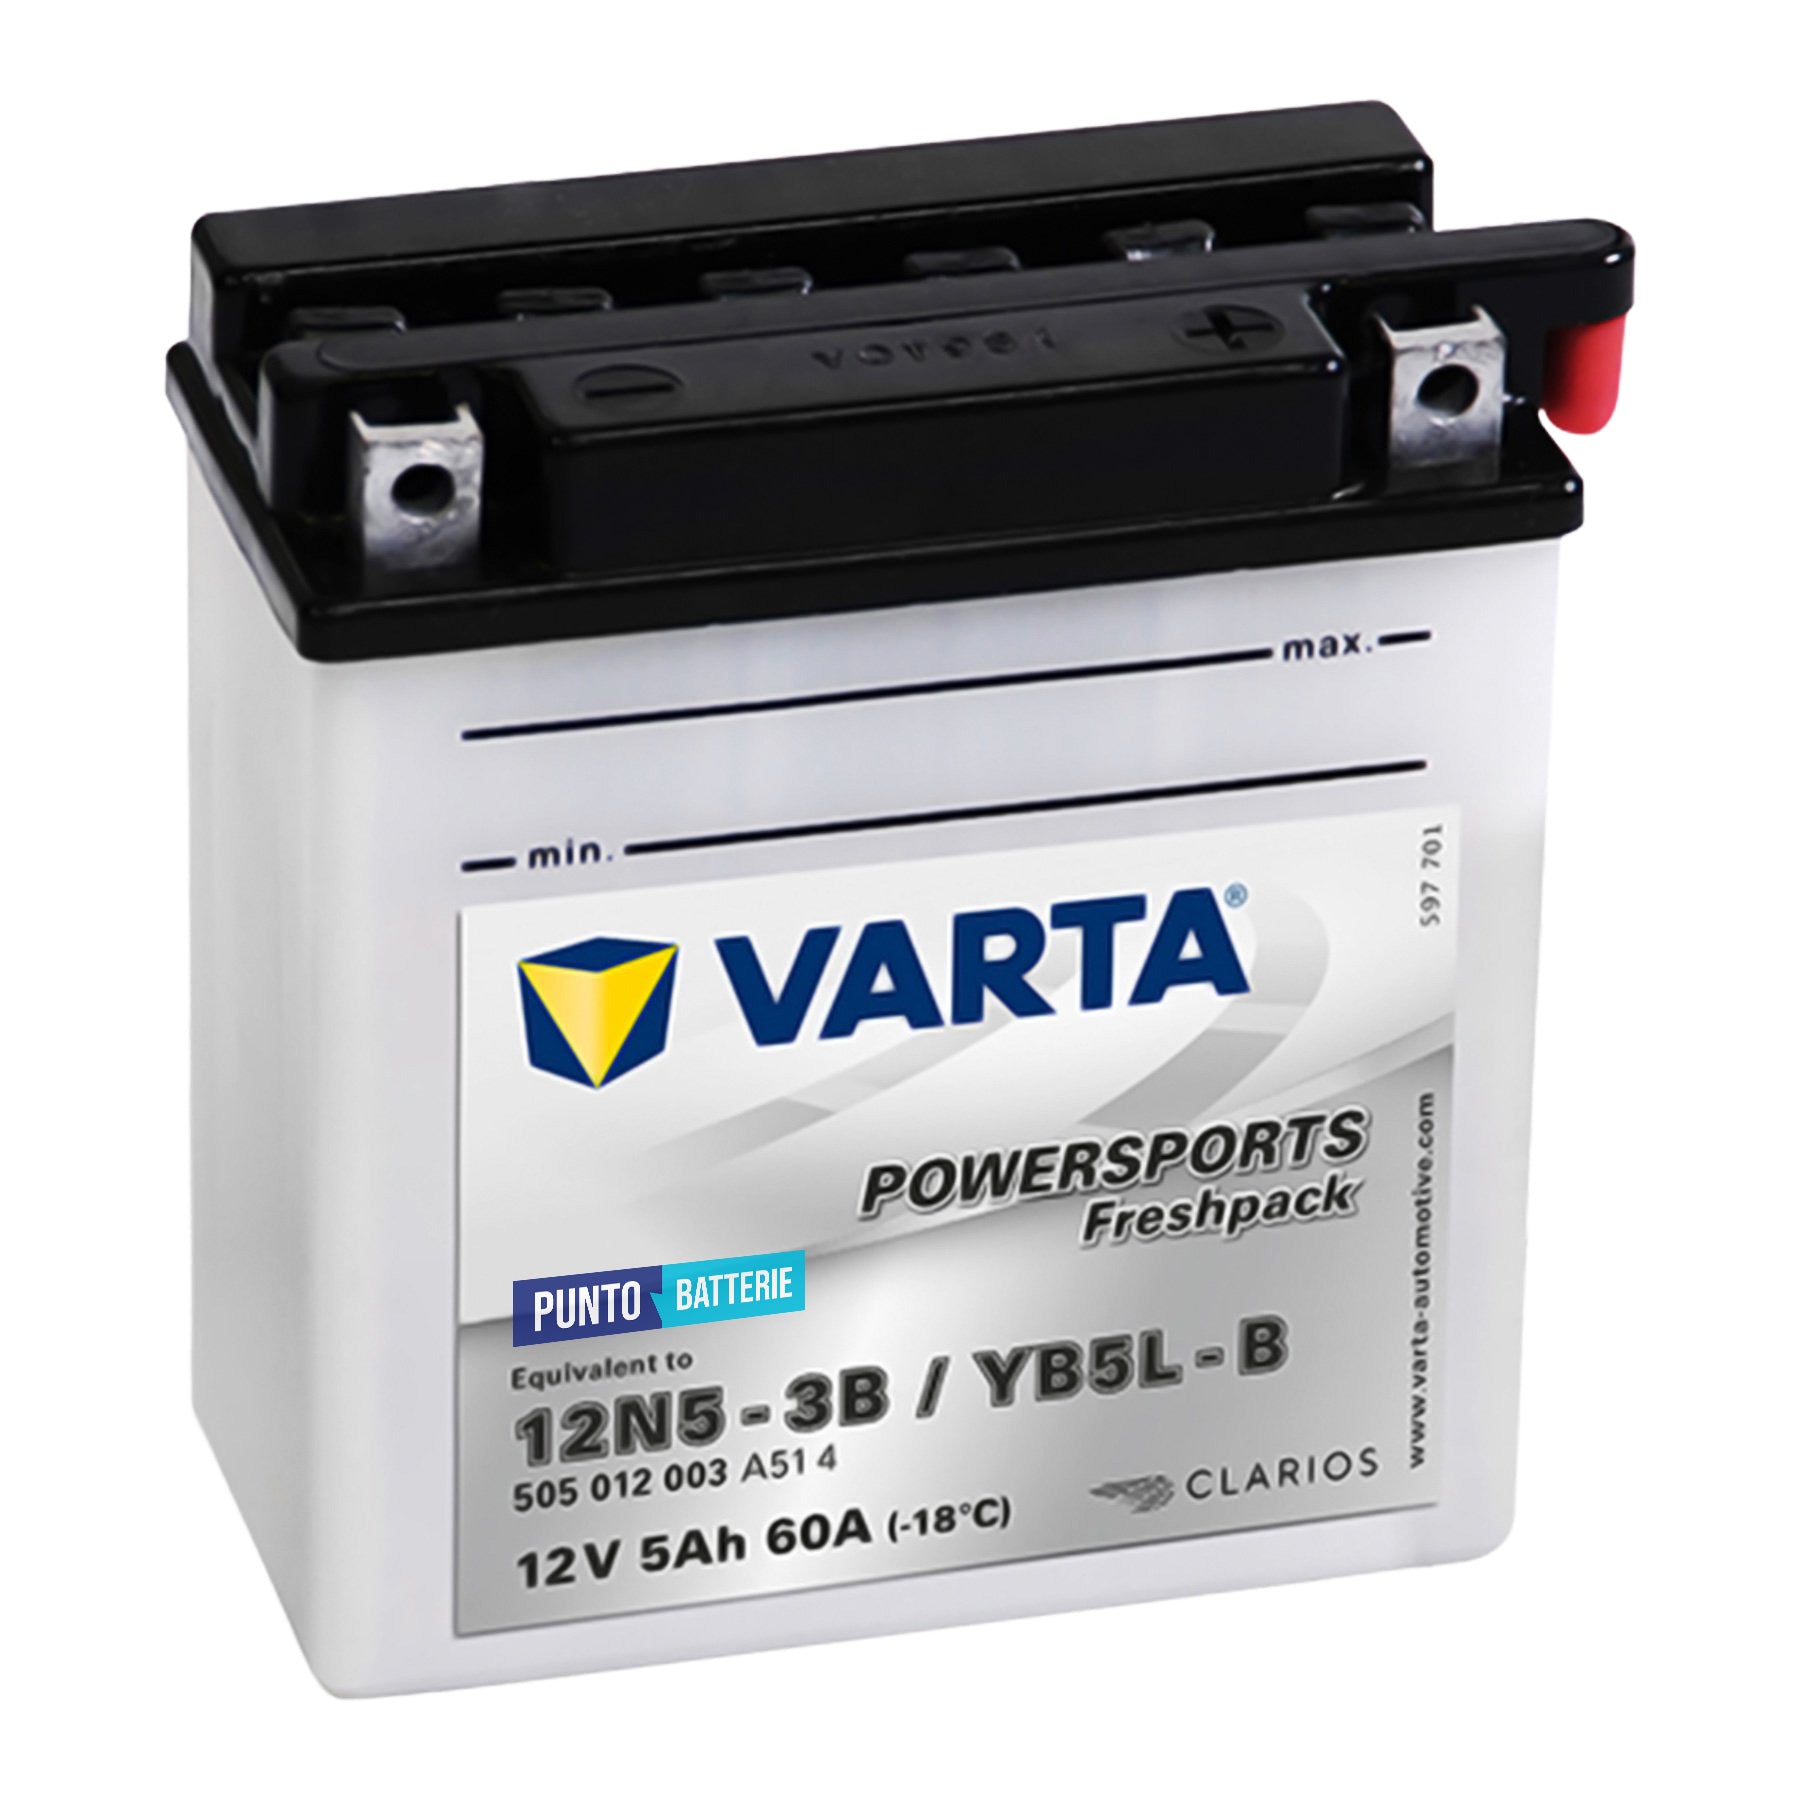 Batteria Varta 12N5-3B - Powersport Freshpack (12V, 5Ah, 60A)